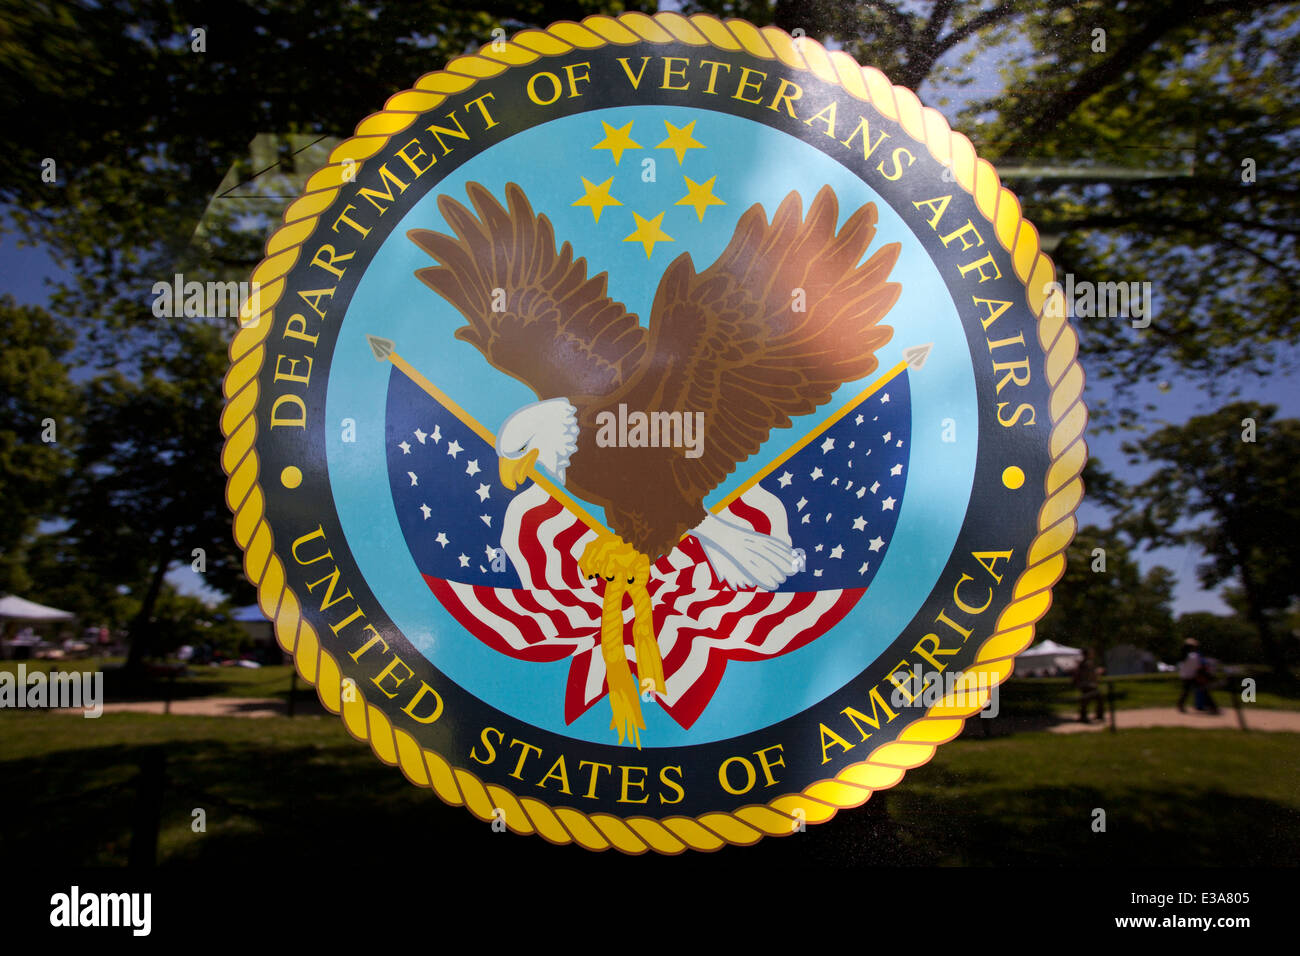 Noi reparto degli affari di veterani della guarnizione - USA Foto Stock